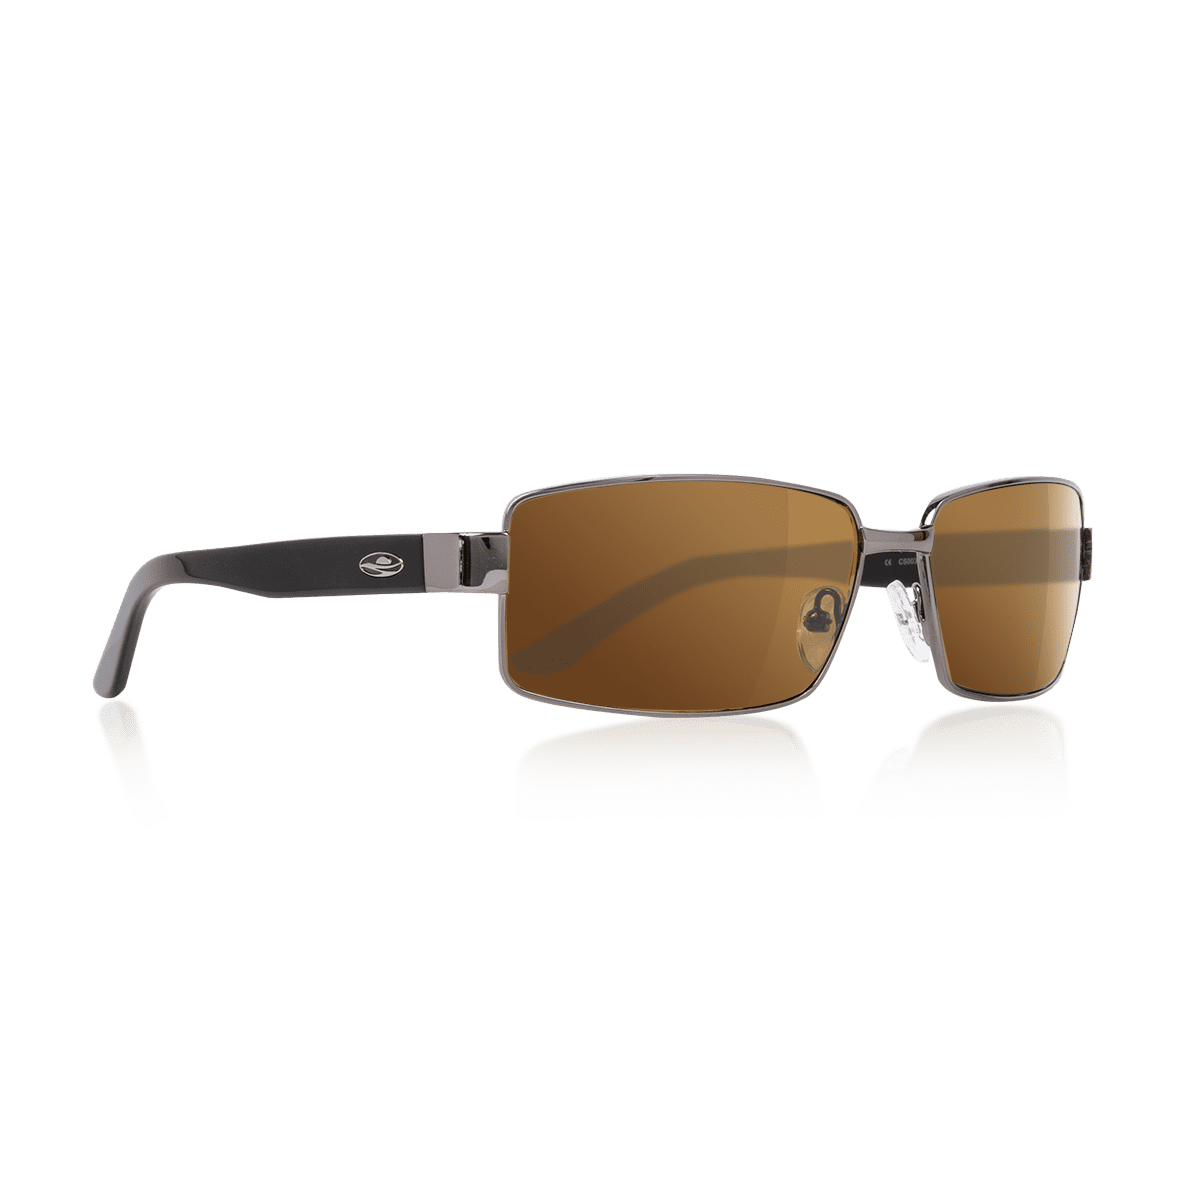 Caribbean Sun Rx'able Unisex Polarized Sport Sunglasses, Turks ...